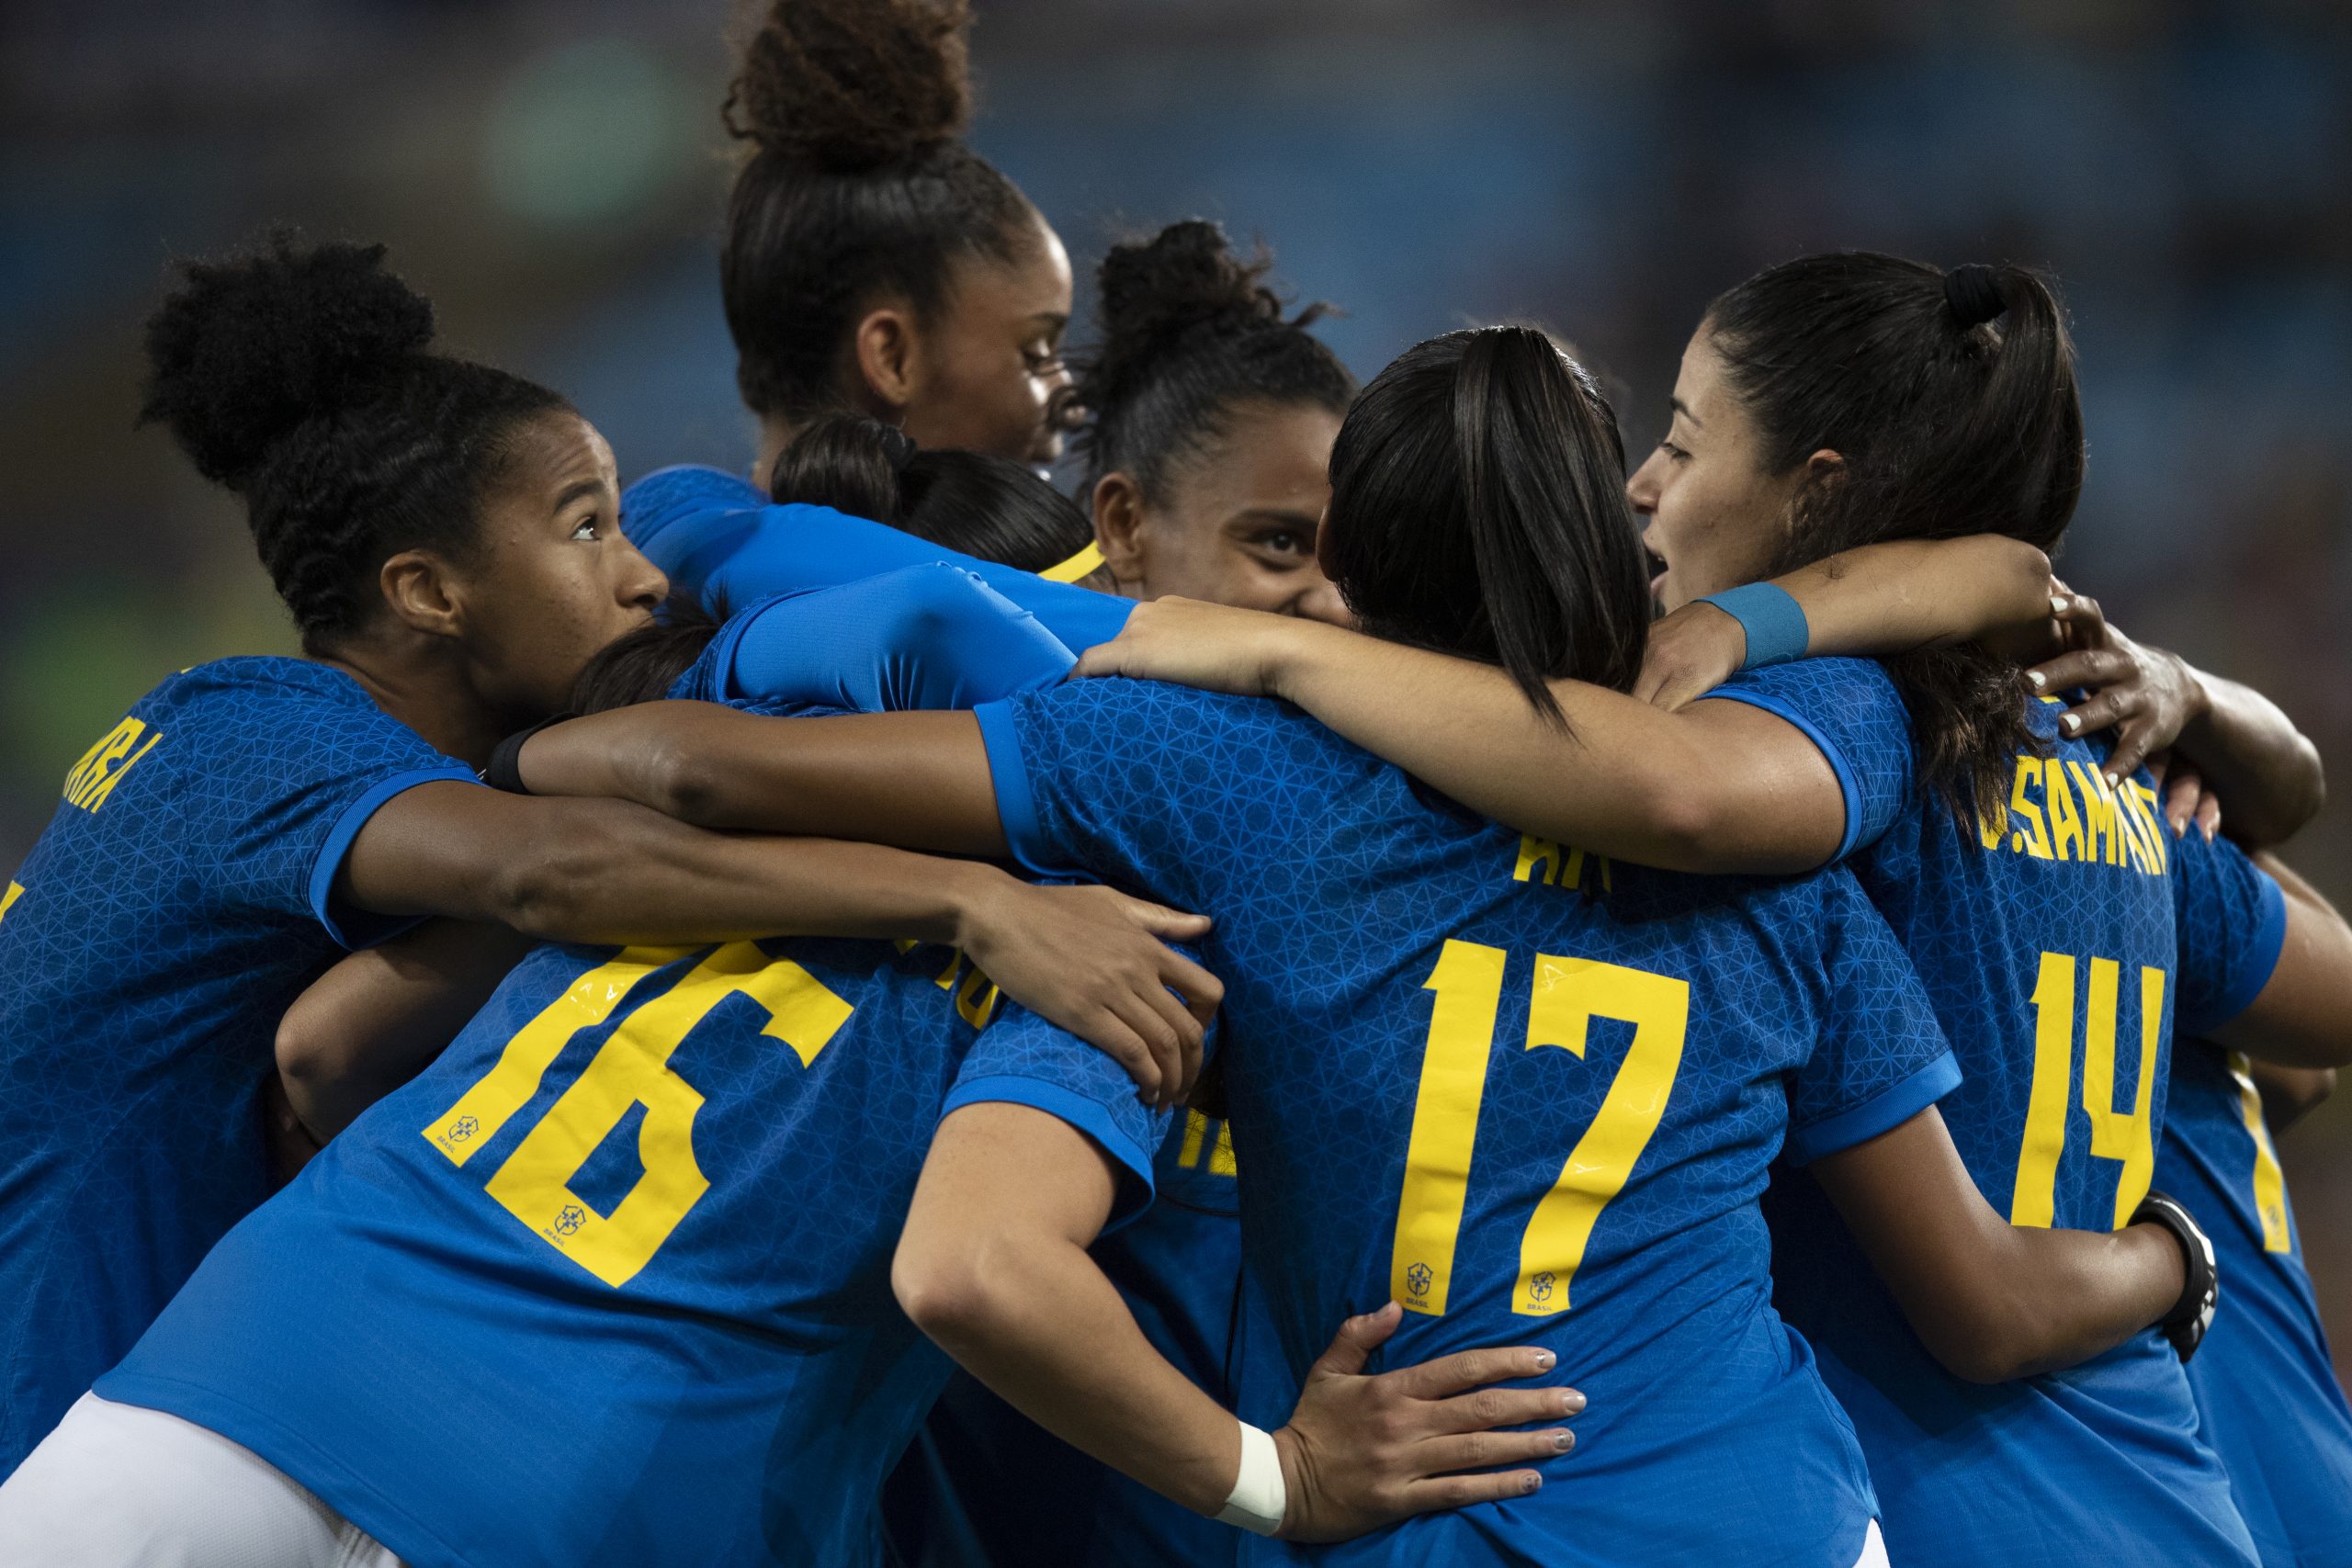 Em preparação para a Copa do Mundo Feminina, Brasil encara a Itália no último amistoso desta Data Fifa